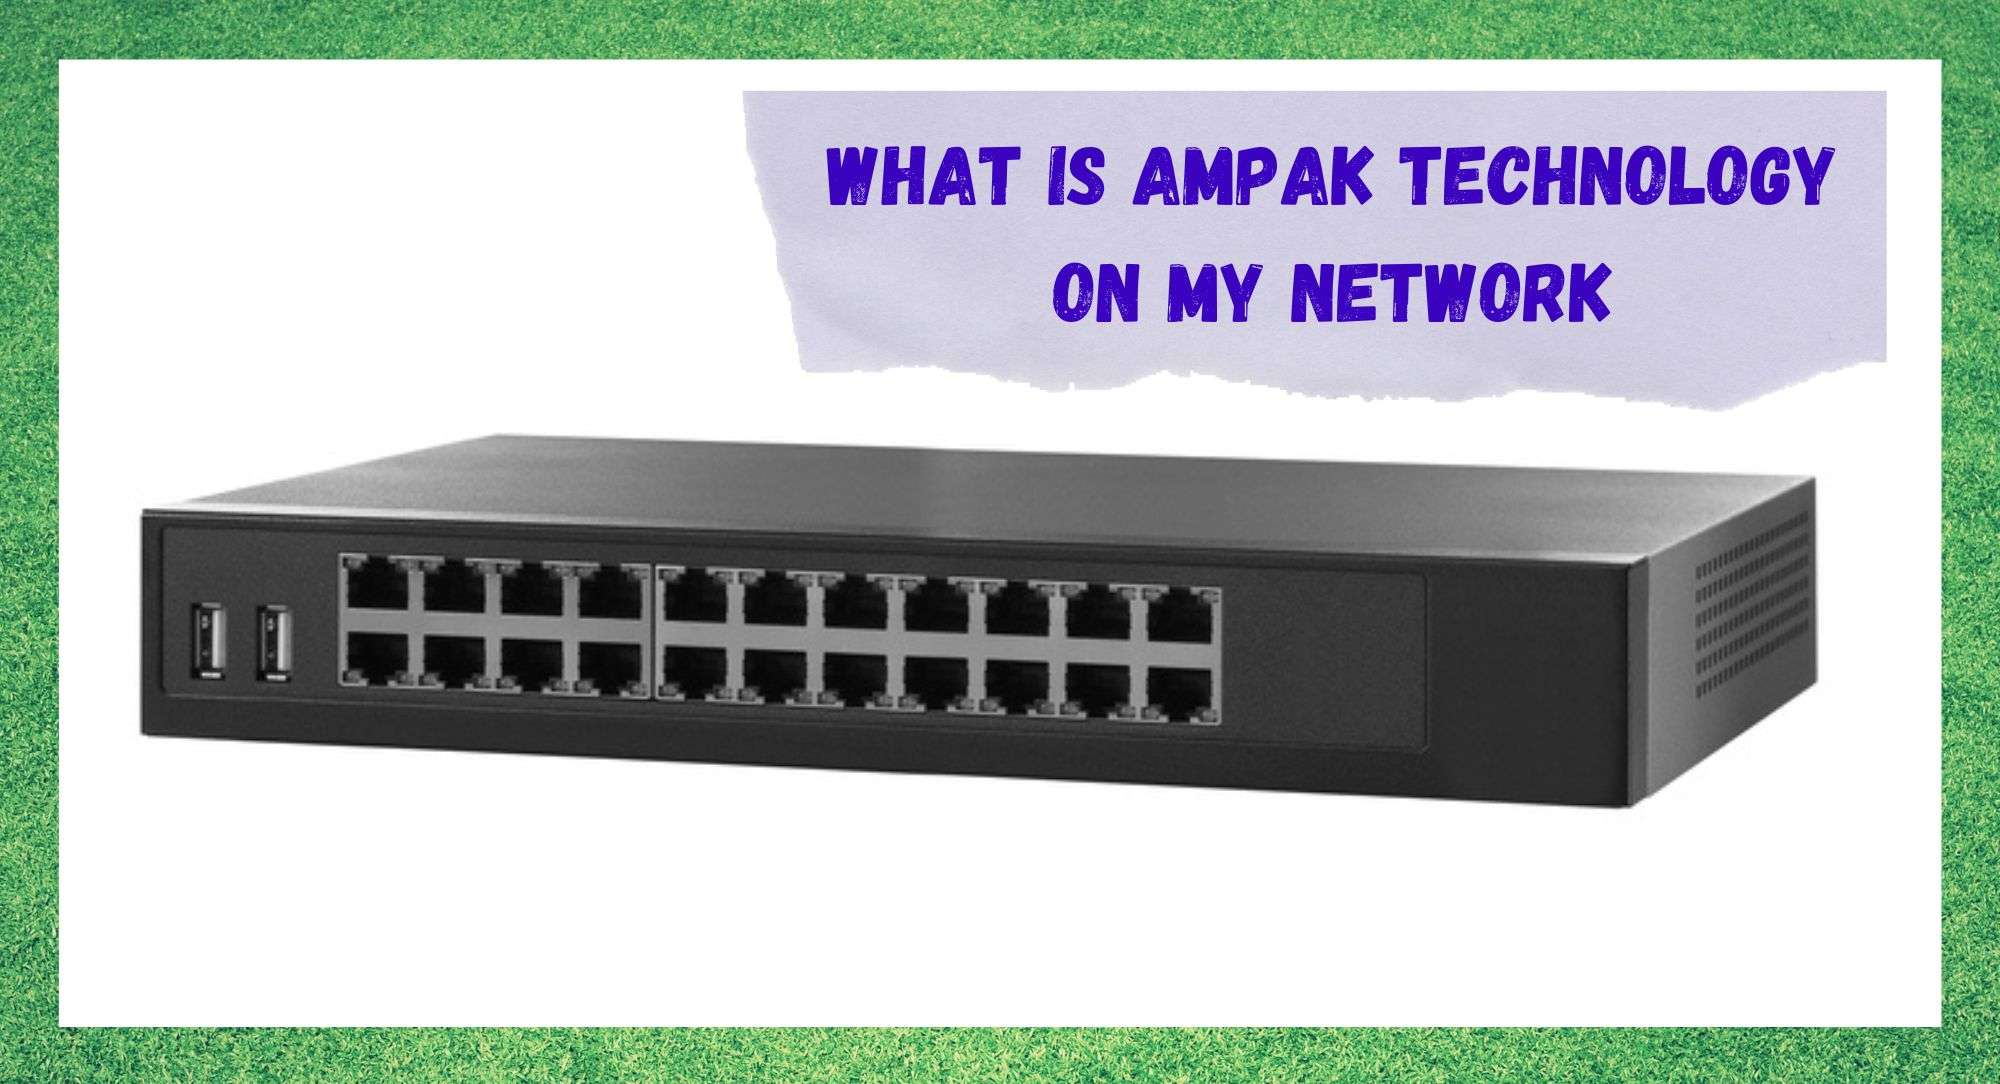 Что такое технология AMPAK в моей сети? (Ответ)